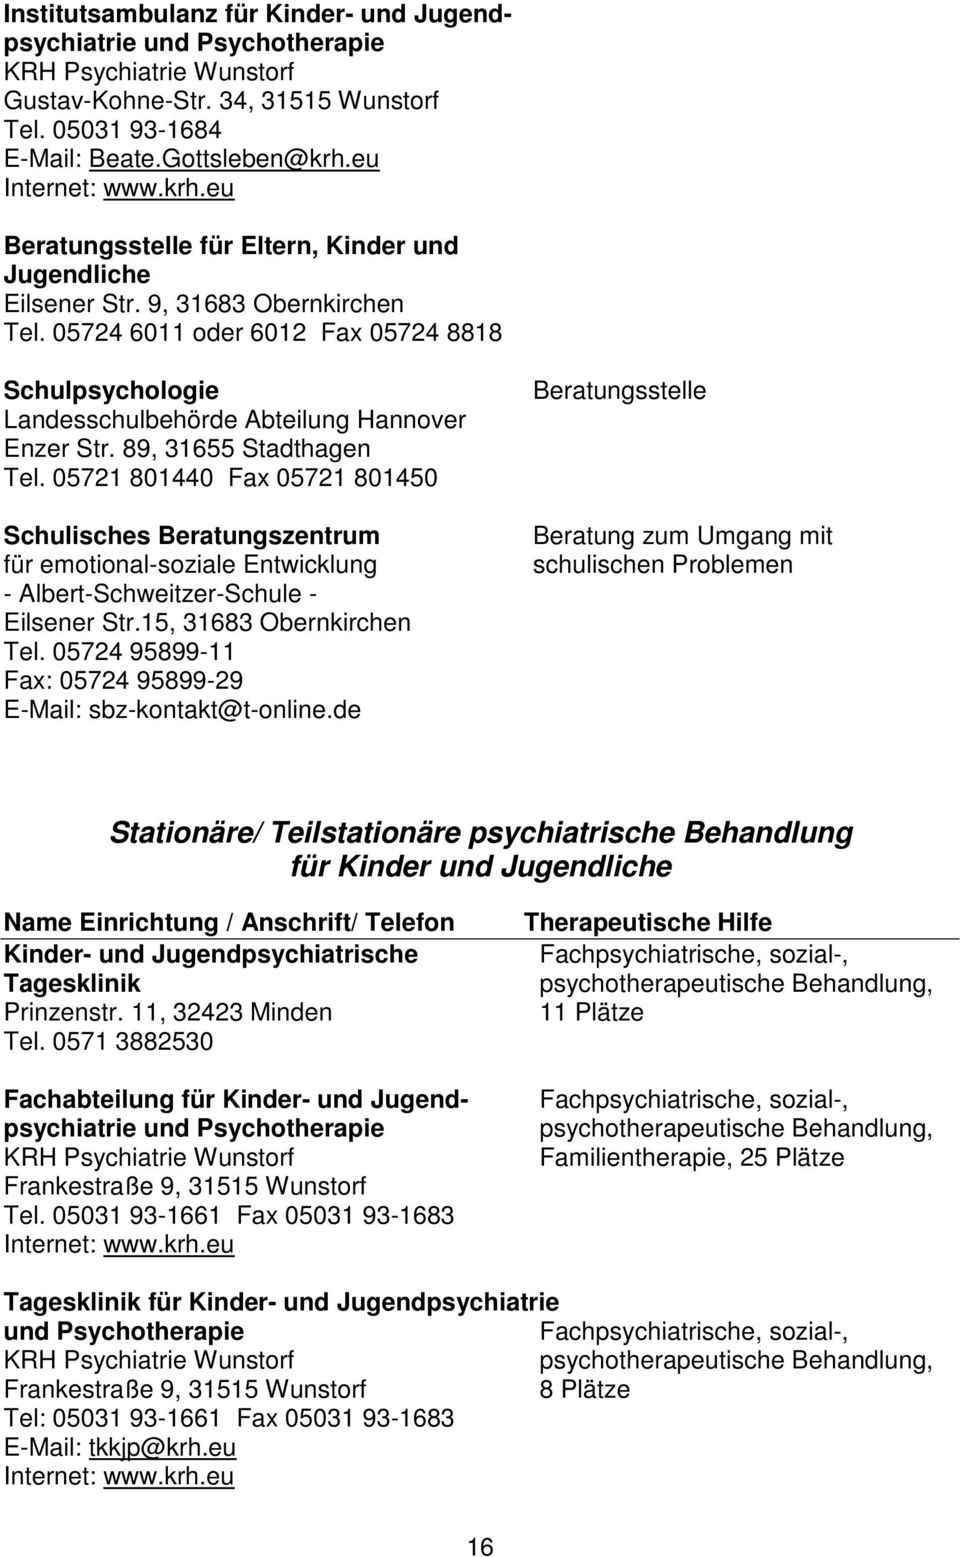 89, 31655 Stadthagen Tel. 05721 801440 Fax 05721 801450 Schulisches Beratungszentrum für emotional-soziale Entwicklung - Albert-Schweitzer-Schule - Eilsener Str.15, 31683 Obernkirchen Tel.